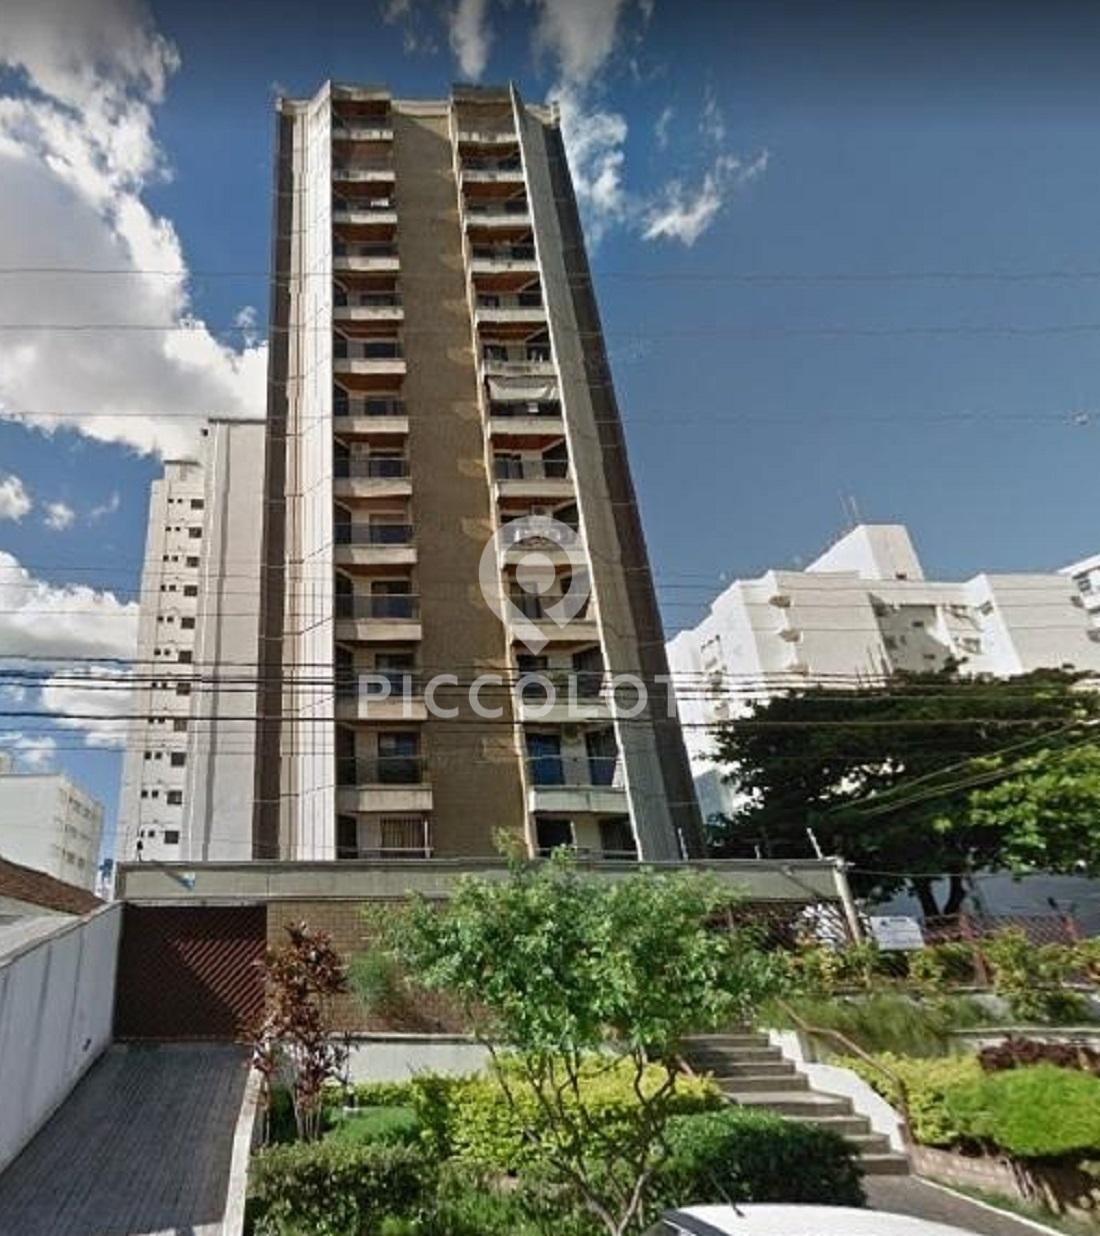 Piccoloto - Apartamento para alugar no Jardim Guanabara em Campinas